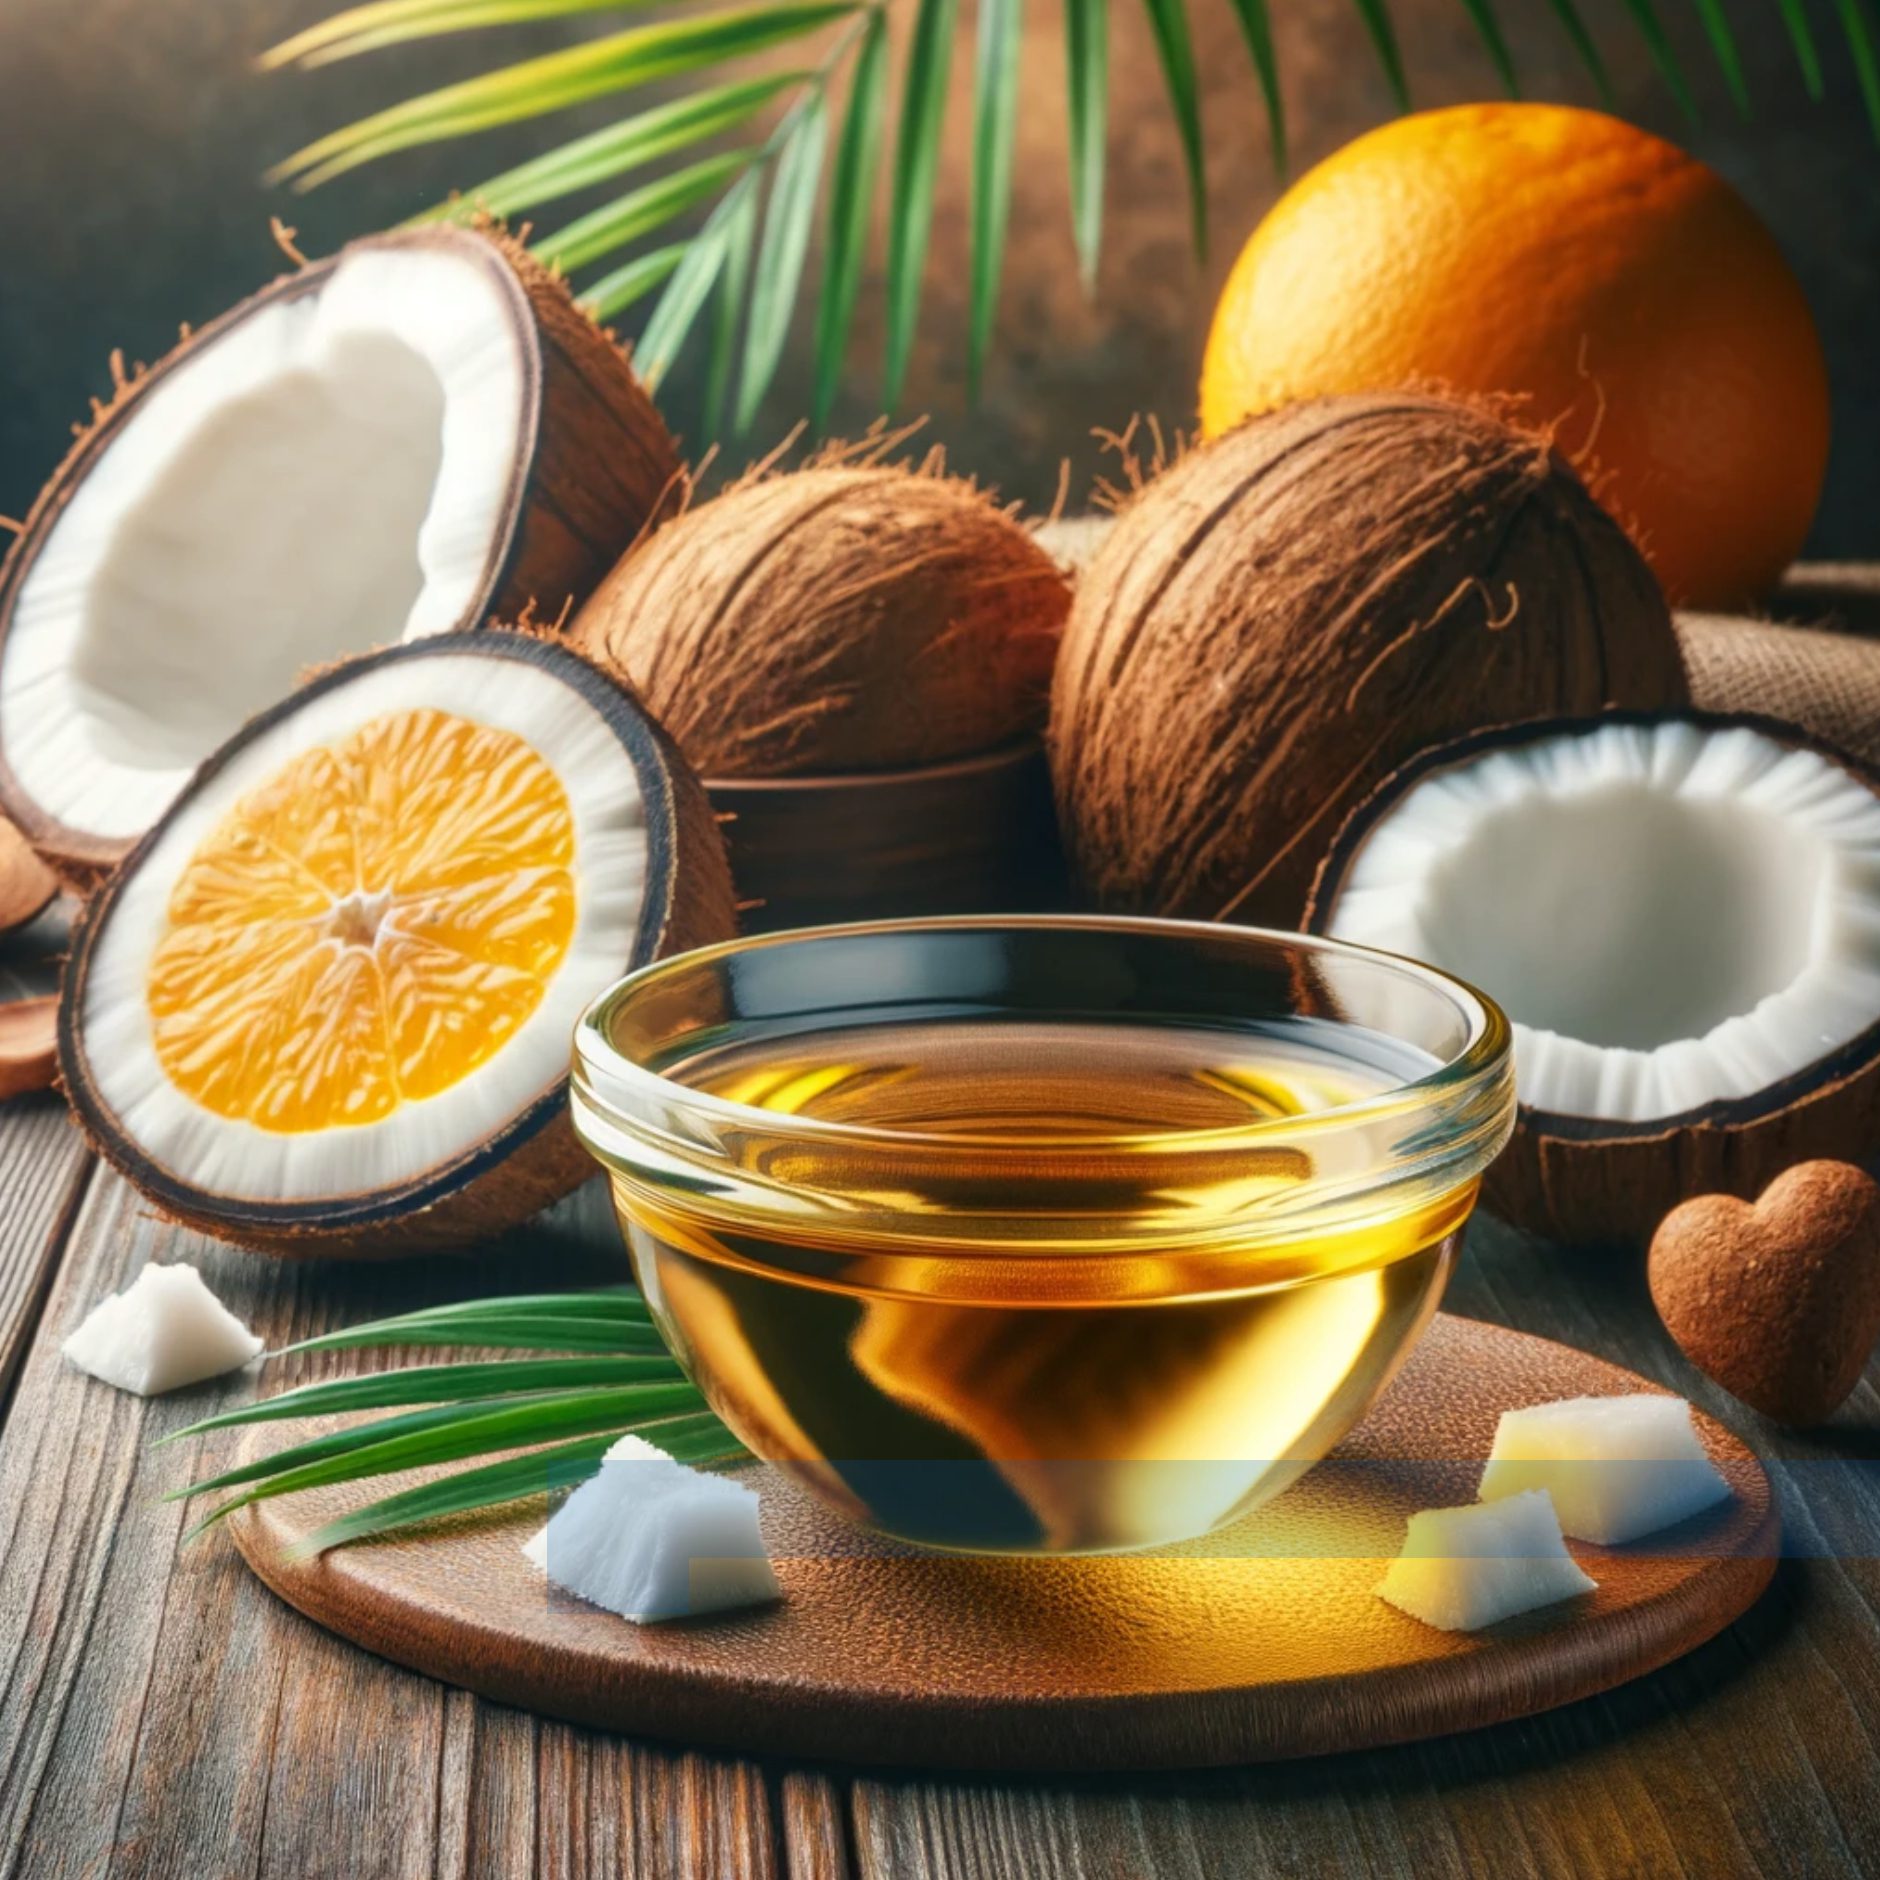 Eine kraftvolle Mischung aus Kokosnussöl und Vitamin-C-Öl. Kokosnussöl bietet natürliche antimykotische Eigenschaften, die das Immunsystem stärken. Vitamin-C-Öl ist bekannt für seine immununterstützenden und hautverjüngenden Qualitäten.